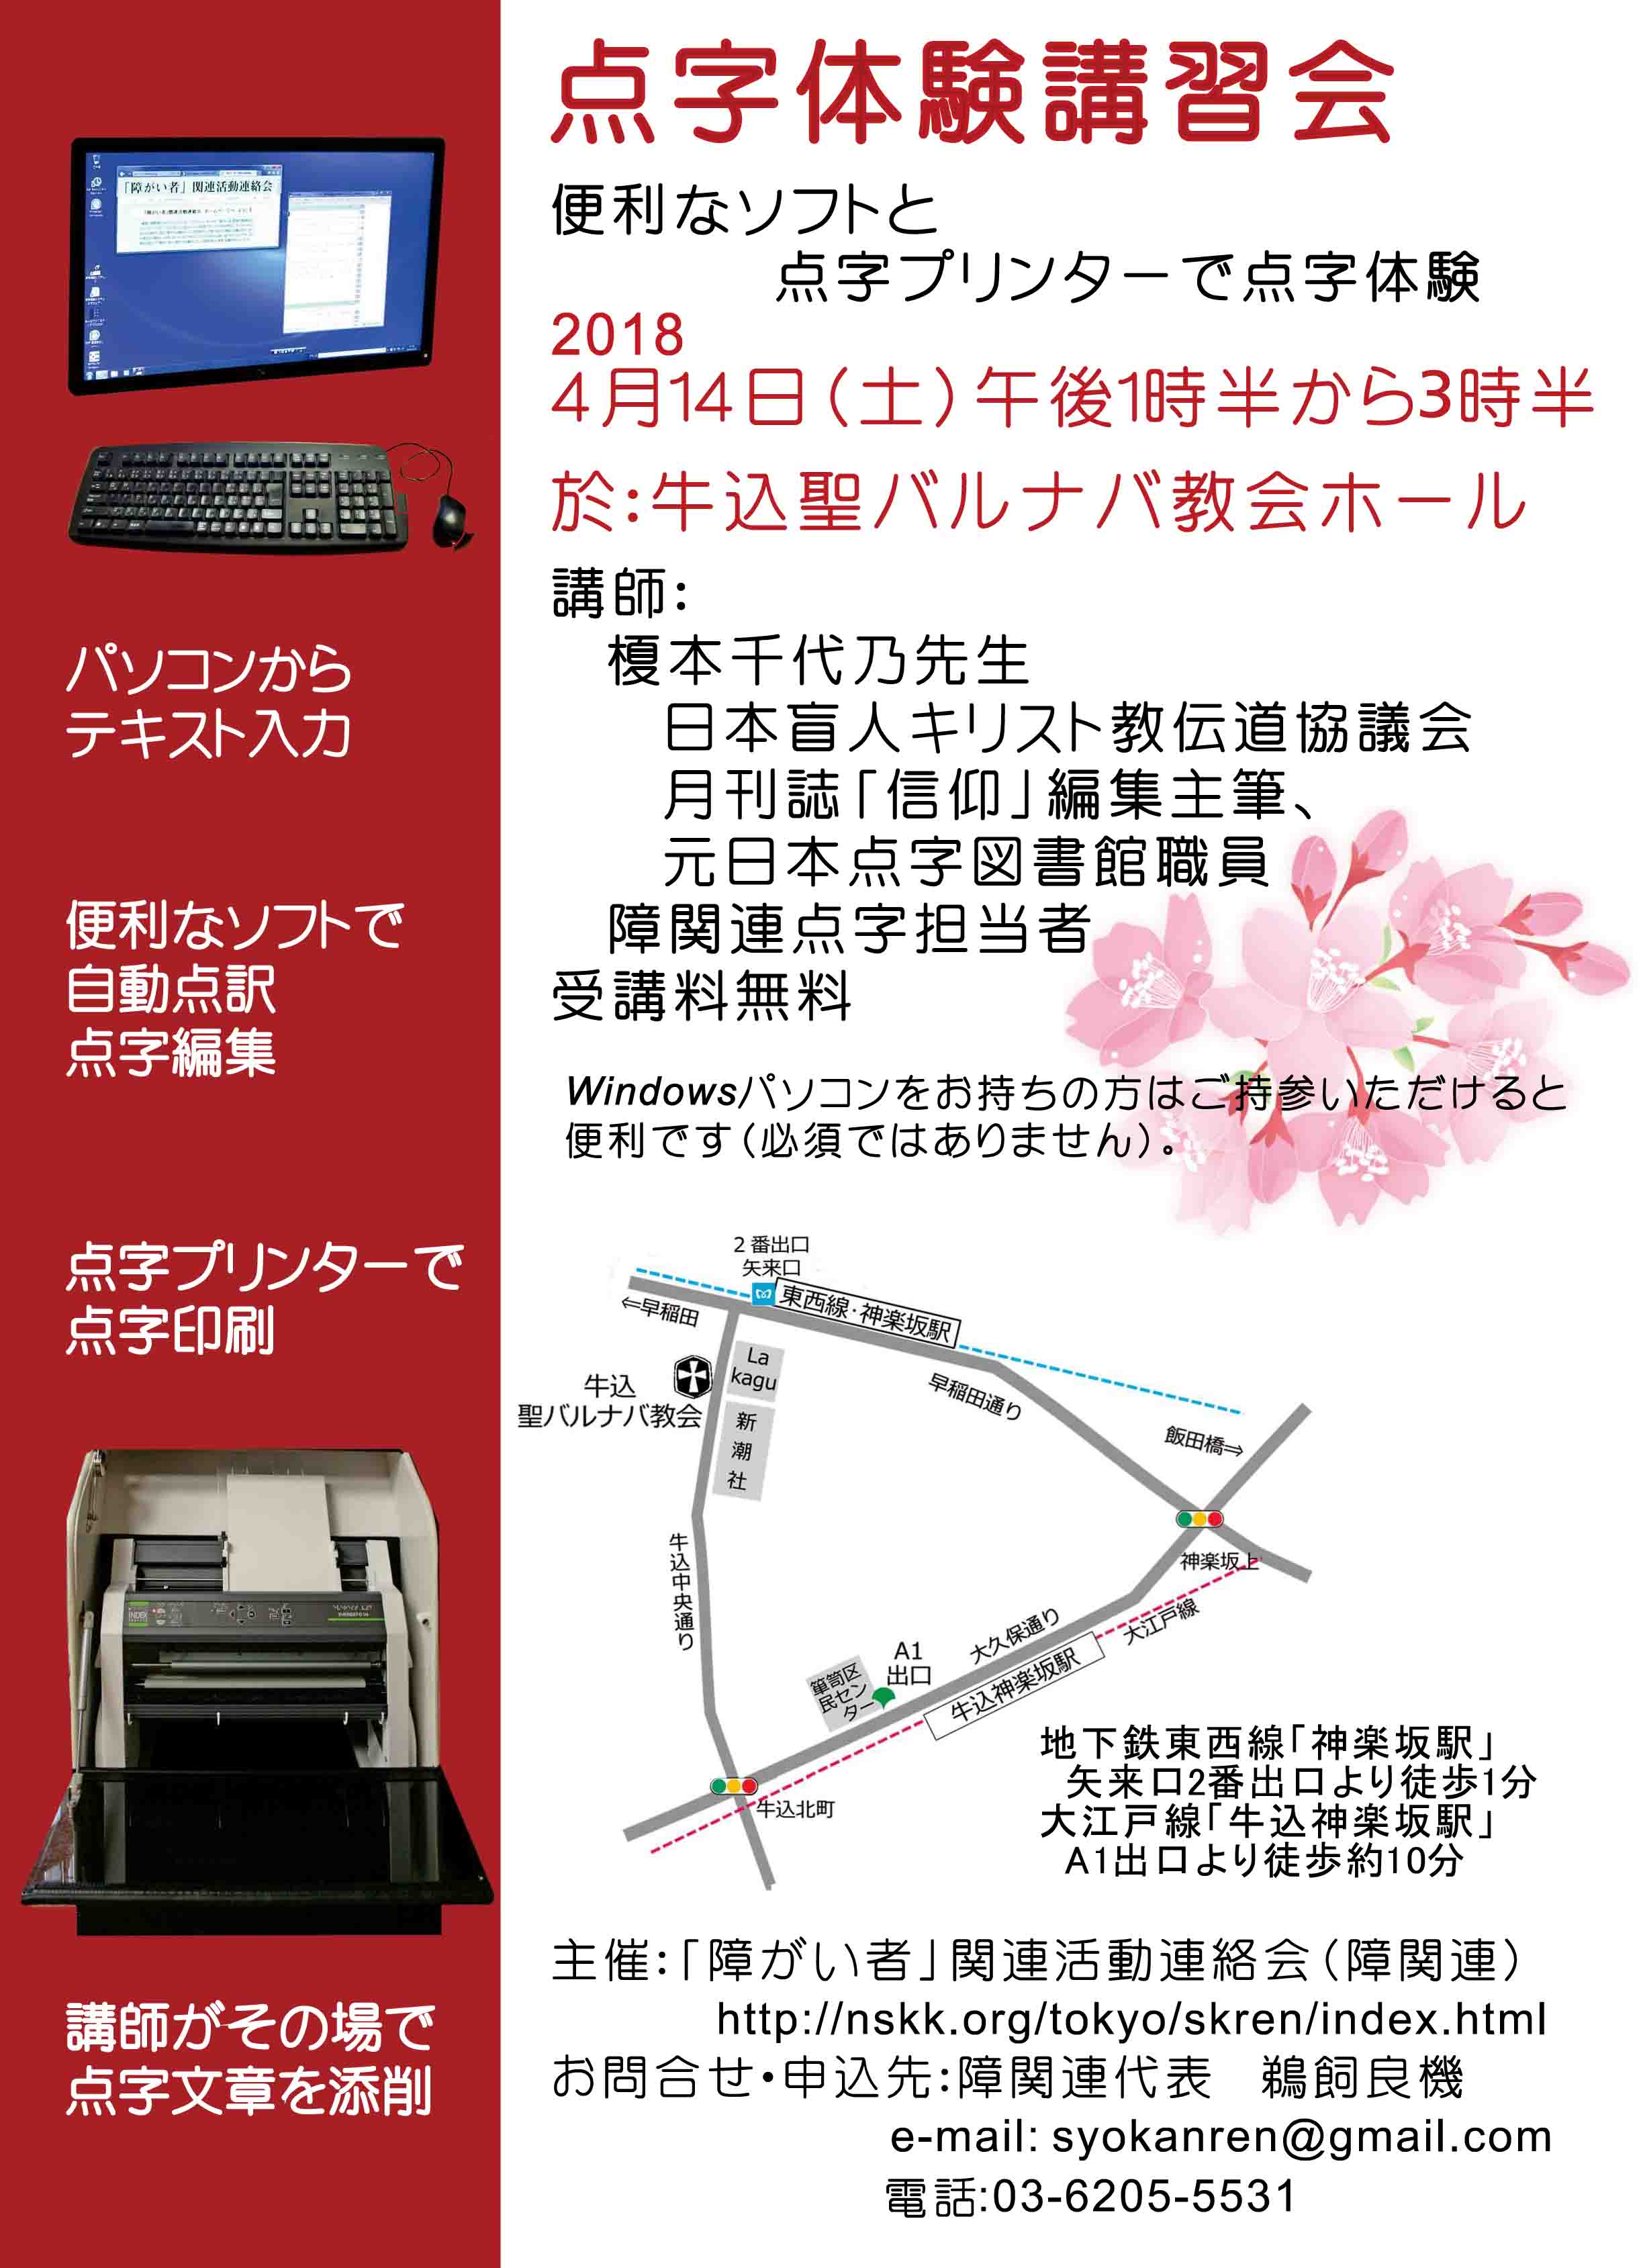 2018年4月14日実施「点字体験講習会」案内チラシの画像。左サイドに赤い帯を配置して、その中に点字プリンターやパソコンの写真がデザインされている。右背景に桜の花の絵が描かれている